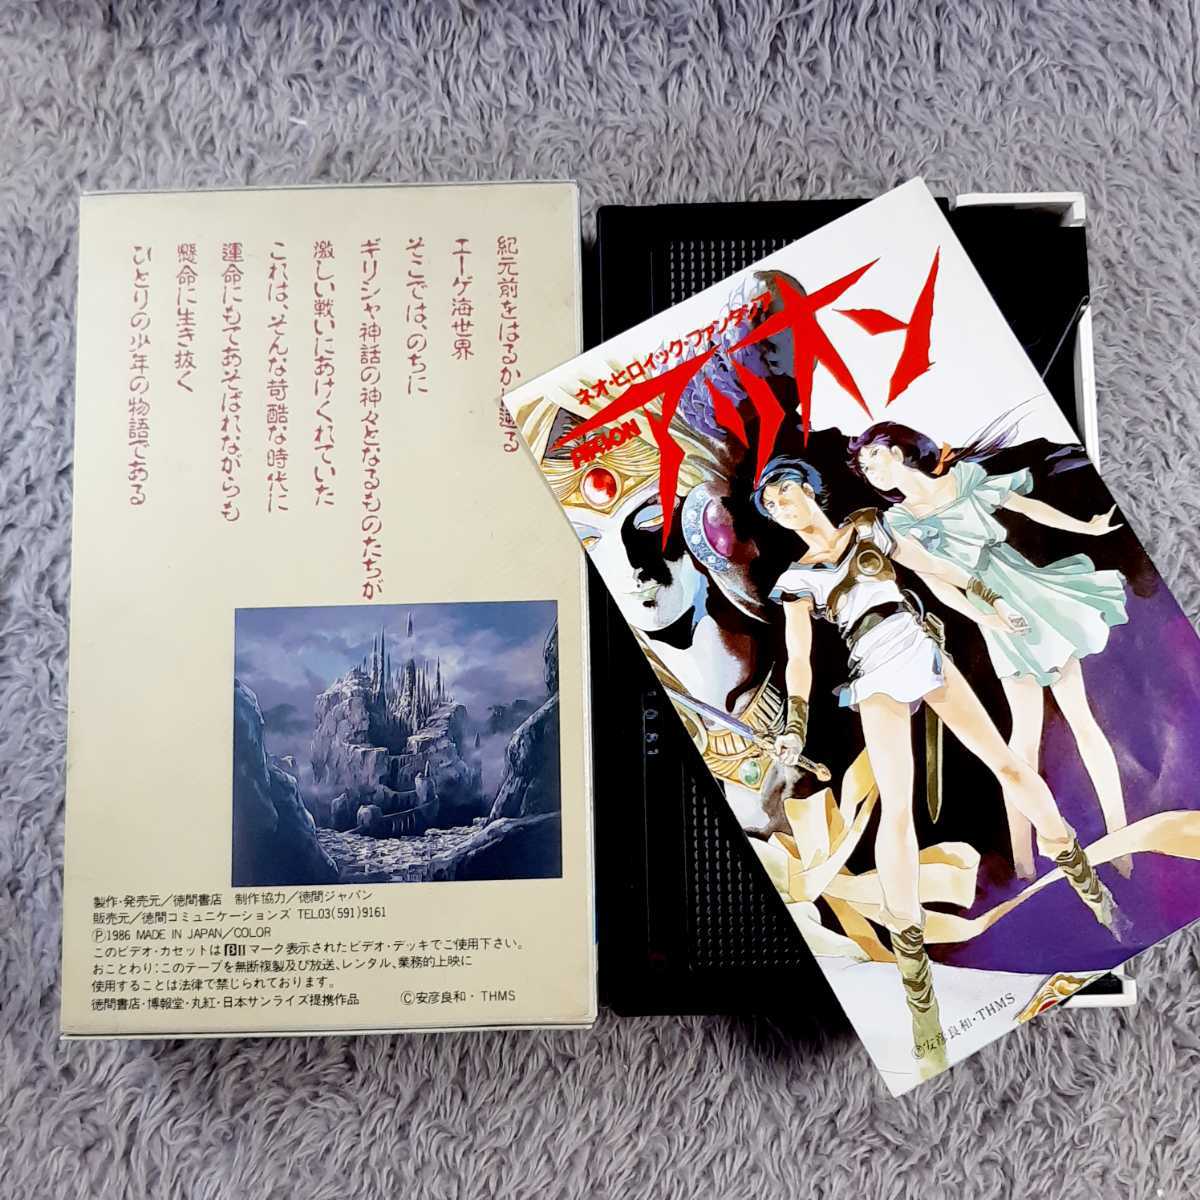 ◇貴重/レア β/Beta ビデオテープ ネオ・ヒロイック・ファンタジア